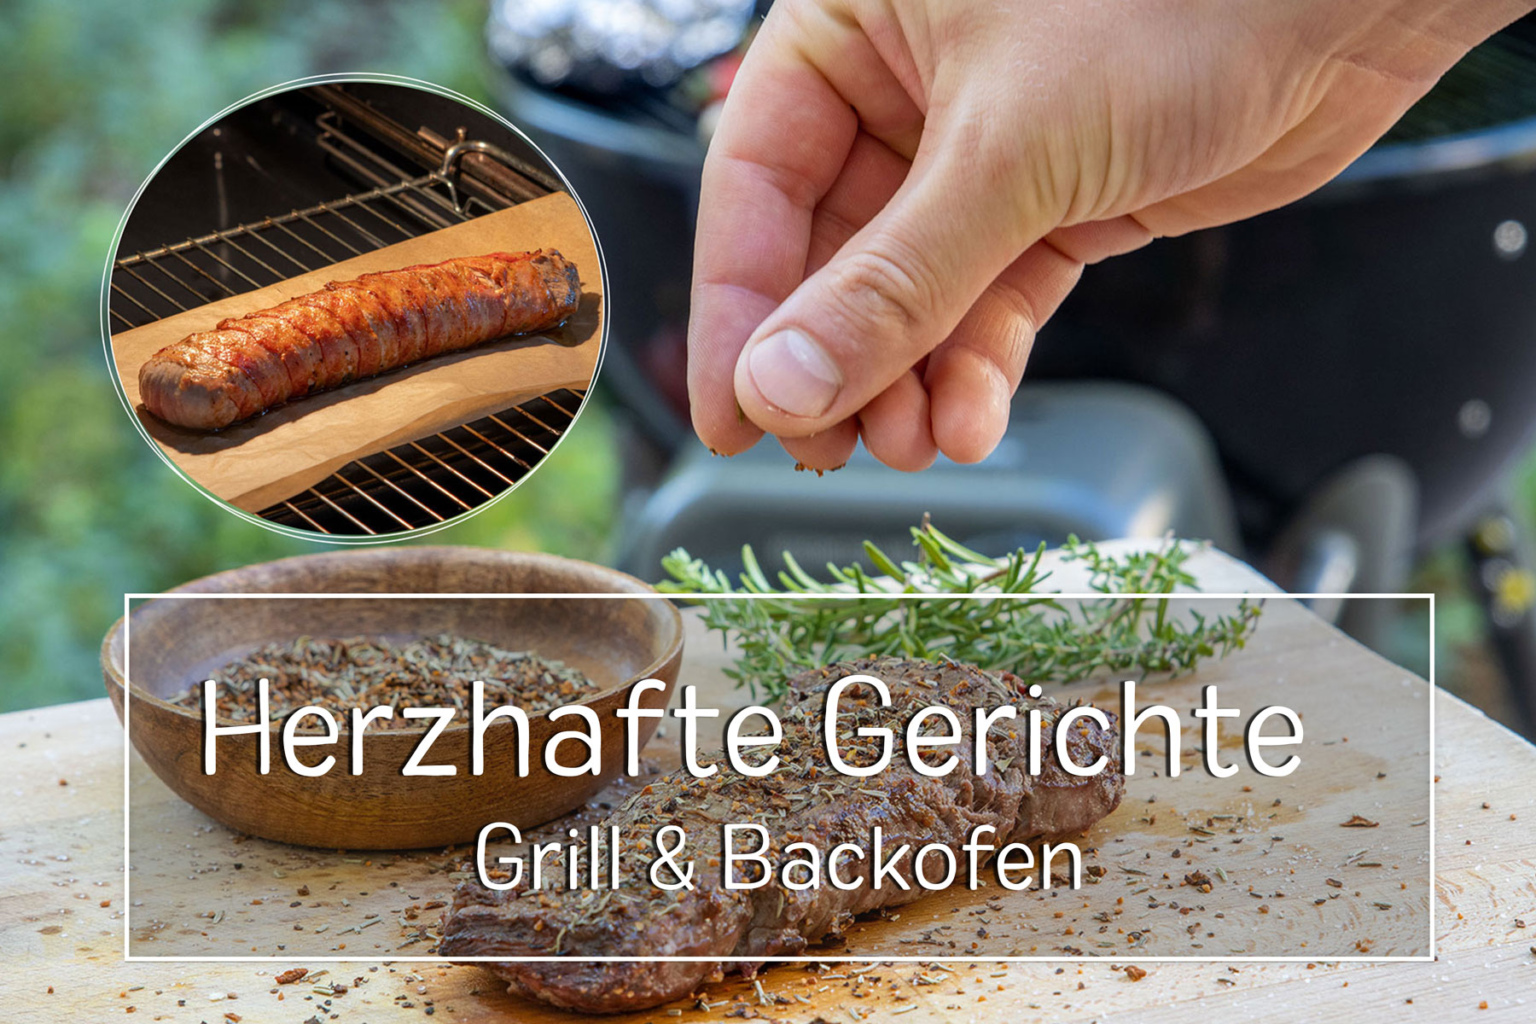 Herzhafte Gerichte vom Grill und Backofen - eat.de